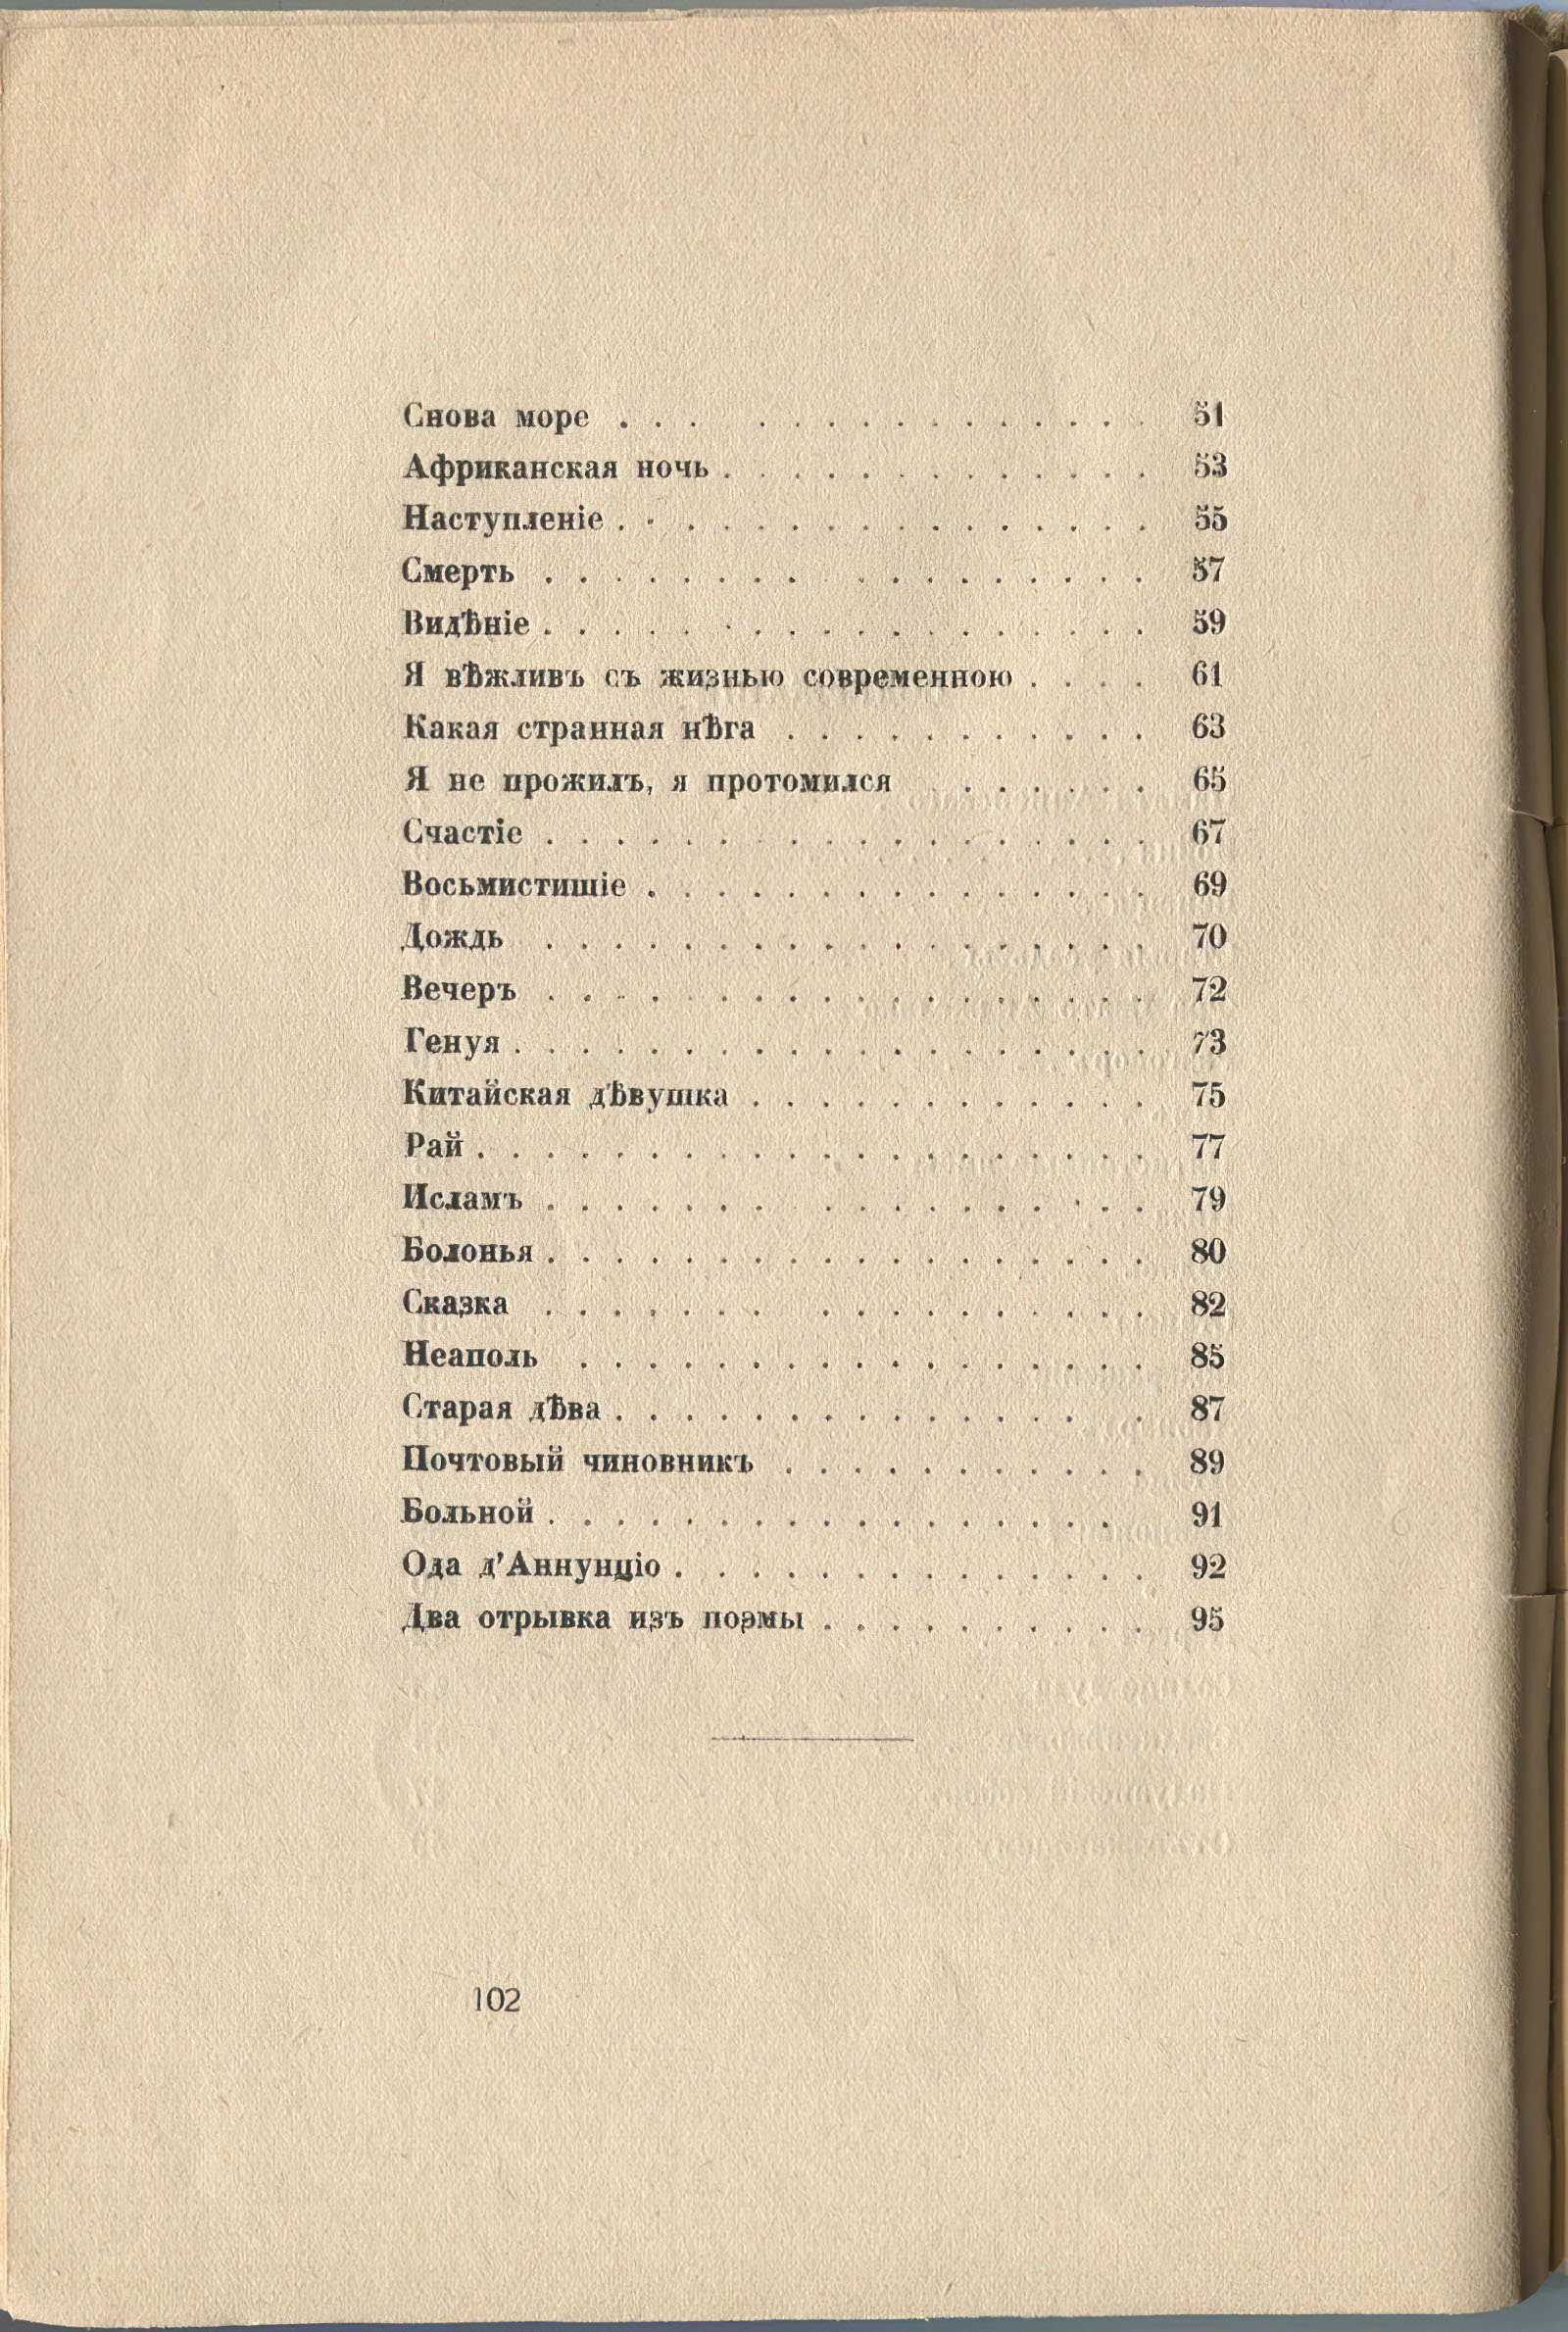 Колчан (1916). Содержание. Страница 101